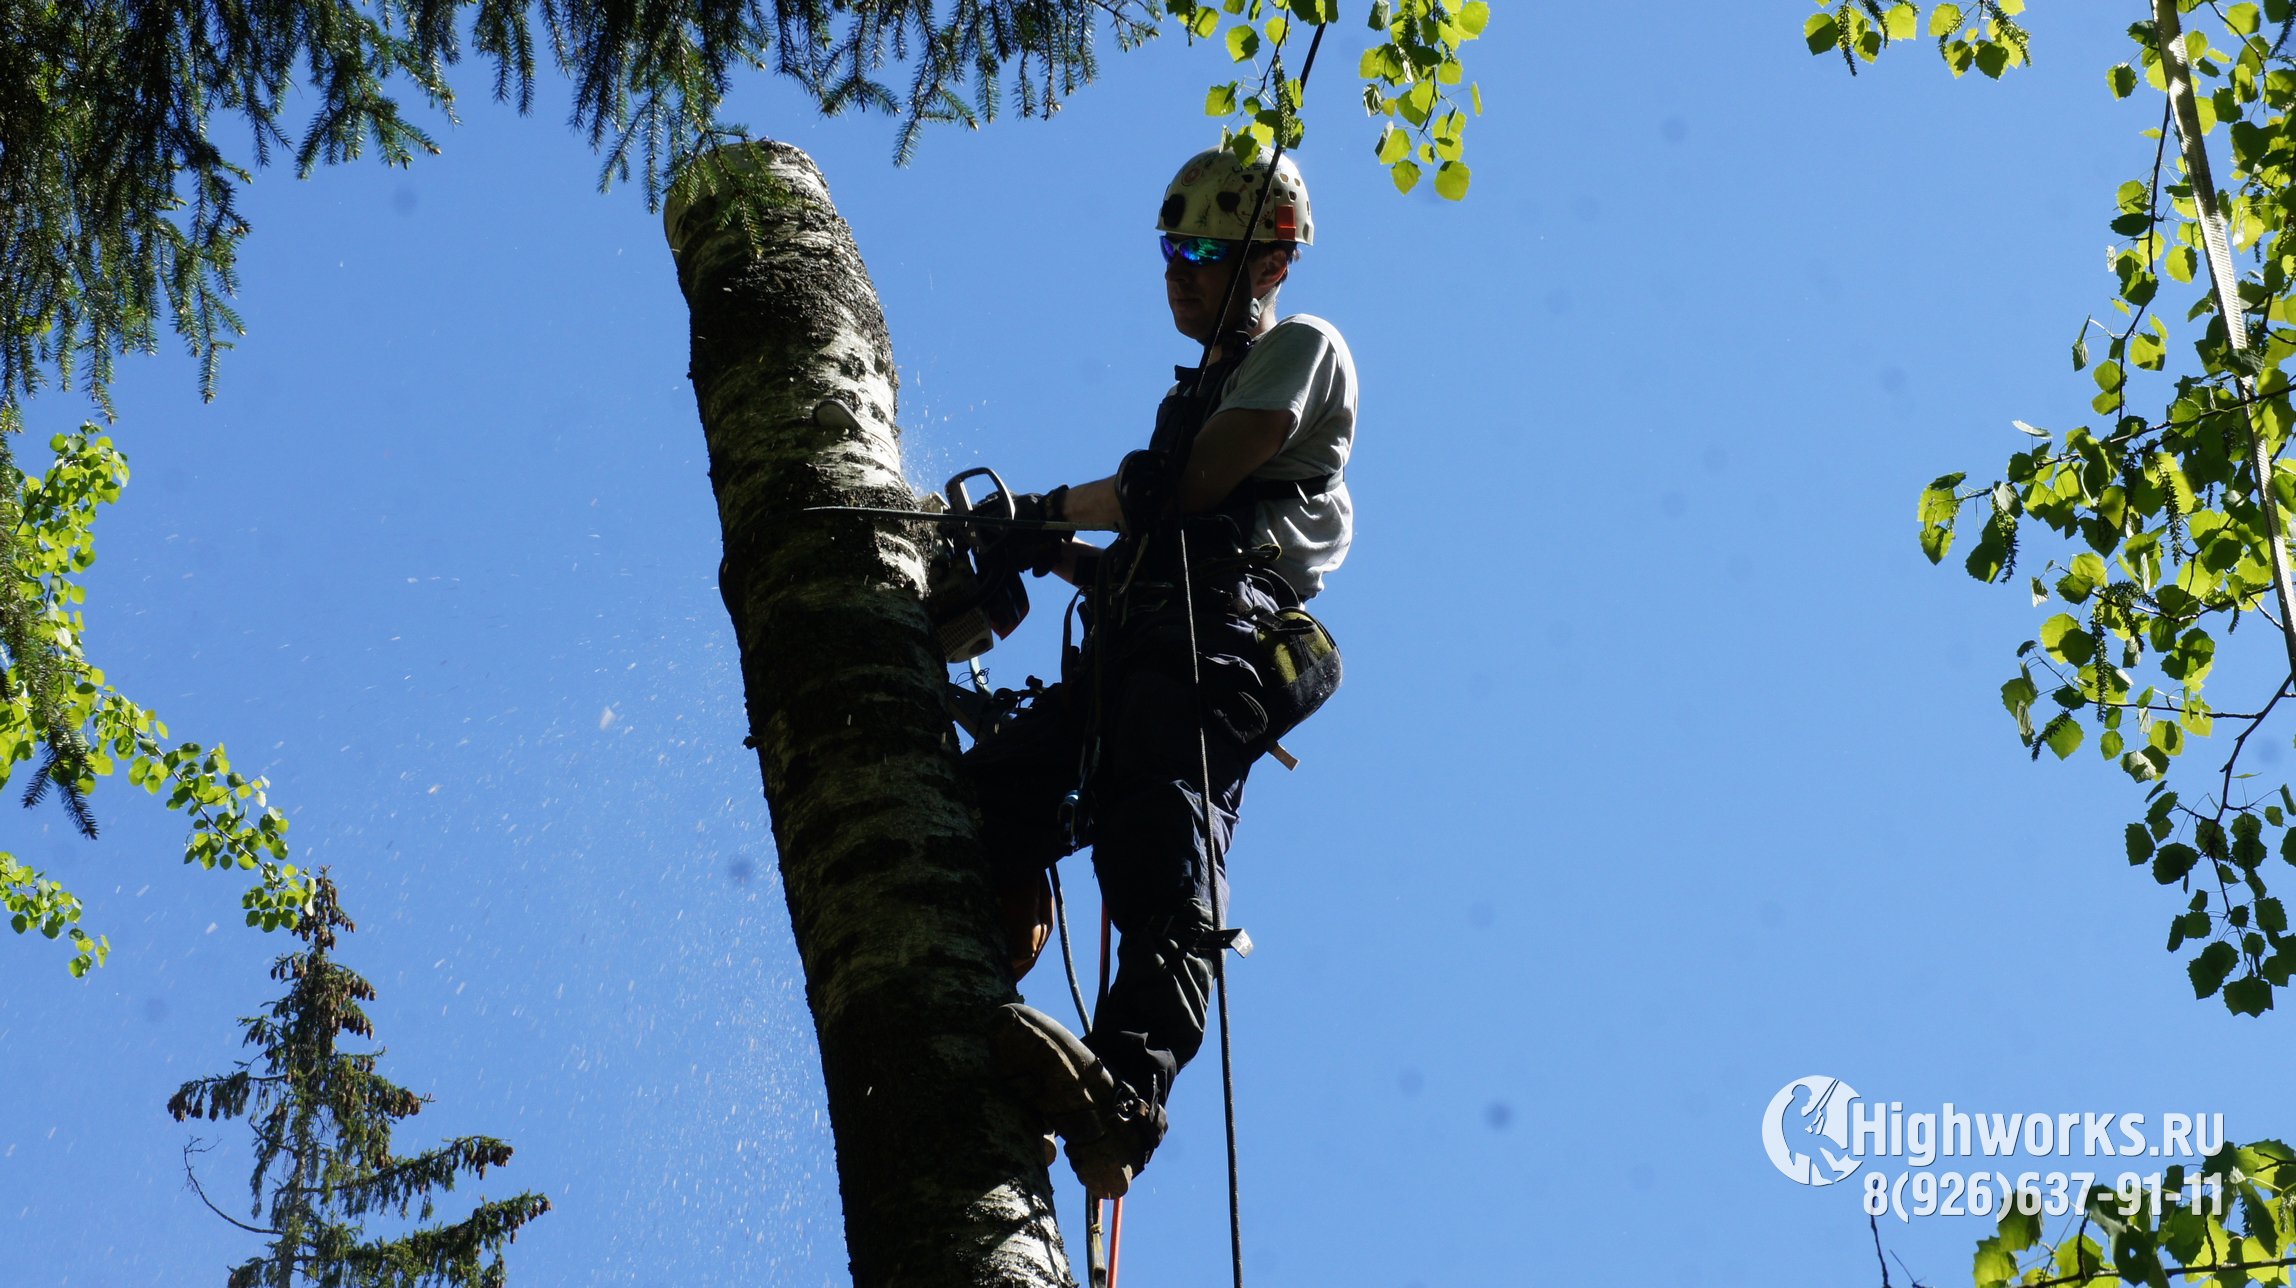 Удаление деревьев промышленными альпинистами